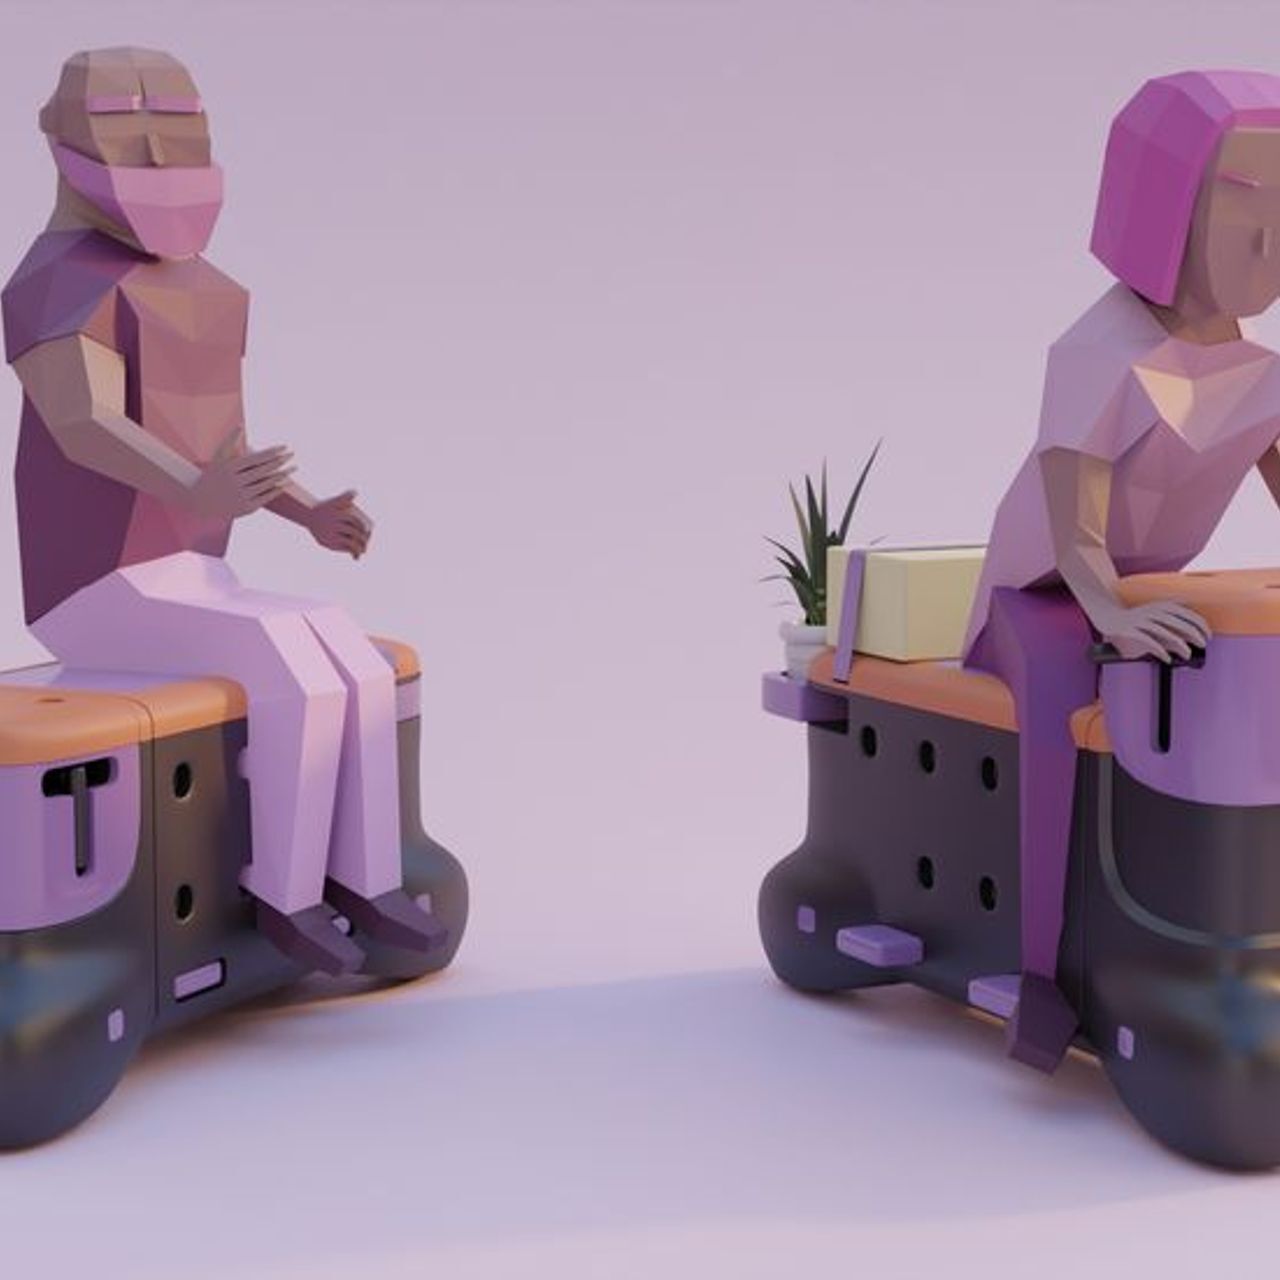 «TOD» - дизайнерлік студенттер Корентин Джанель мен Гийом Иннокенти жасаған скутер-орындық.